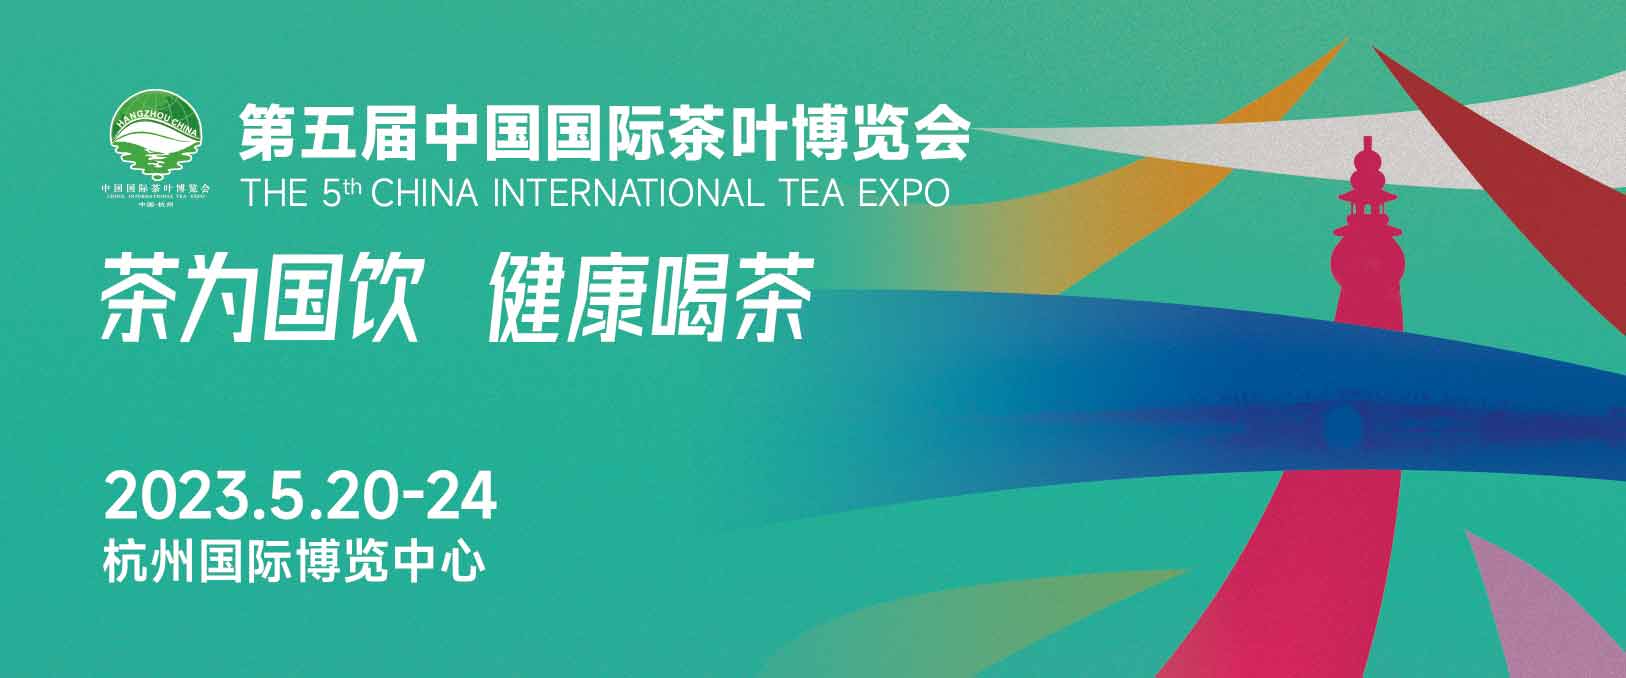 2023 A 5ª exposição internacional de chá da China